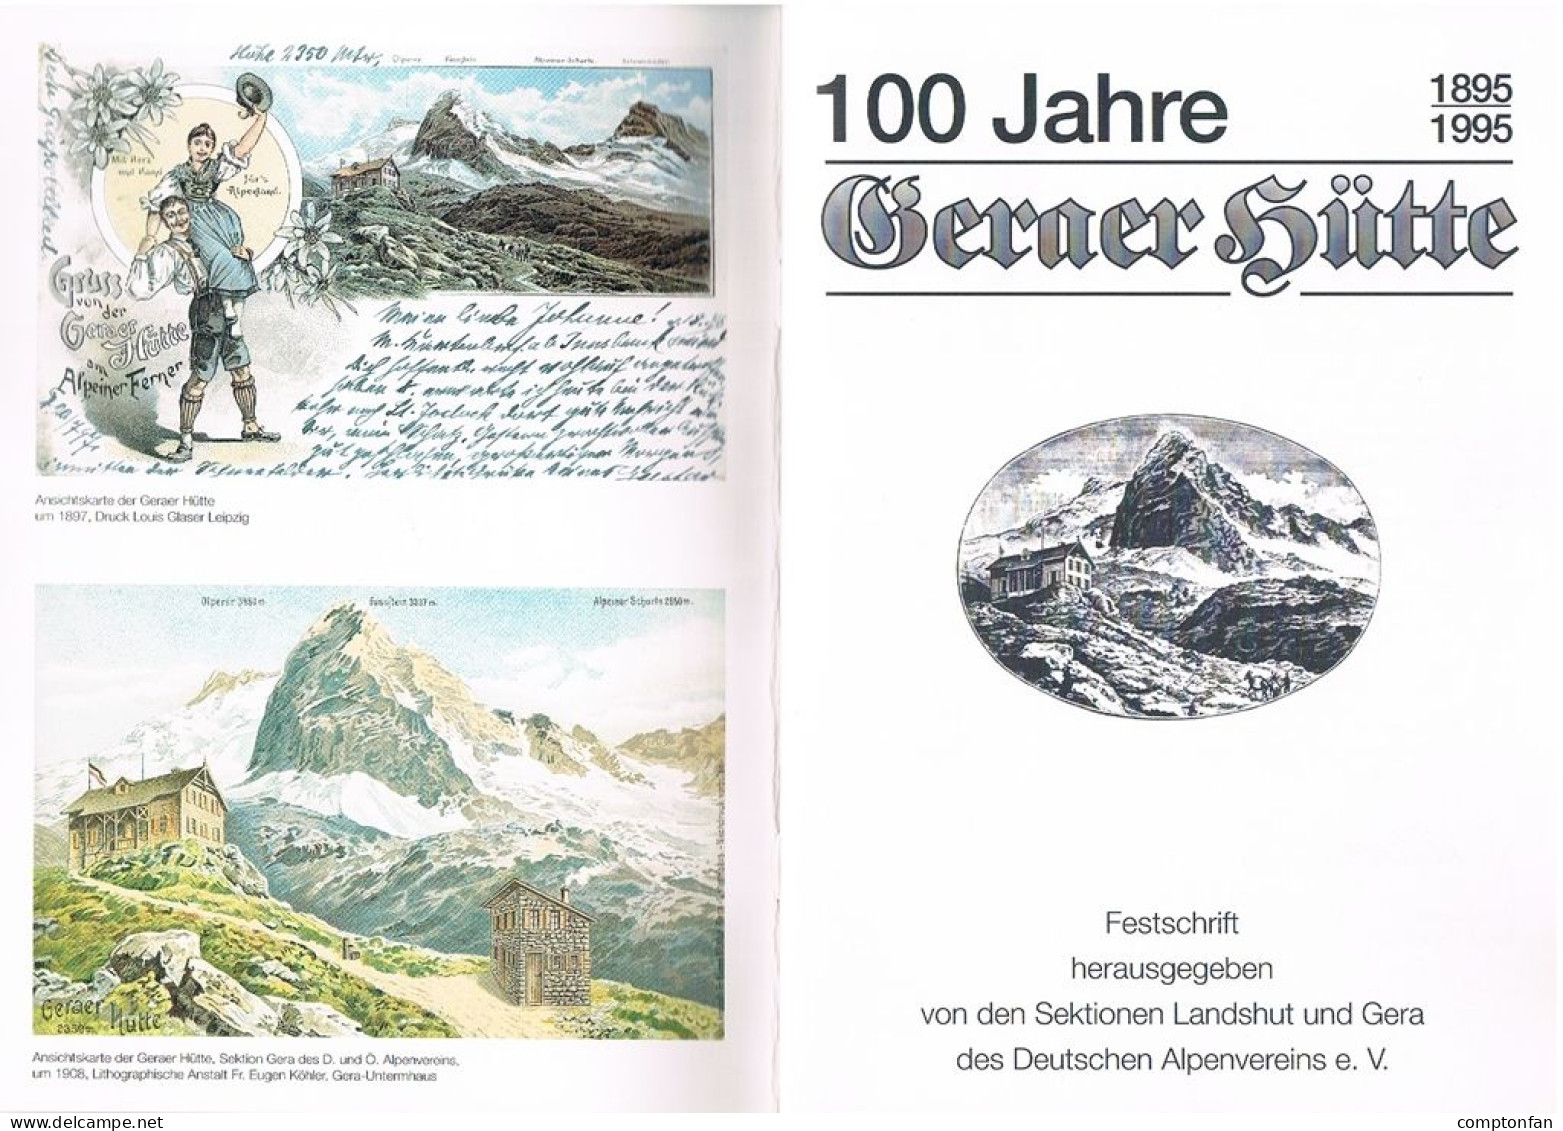 B100 895 Festschrift 100 Jahre Geraer Hütte Deutscher Alpenverein Rarität ! - Oude Boeken